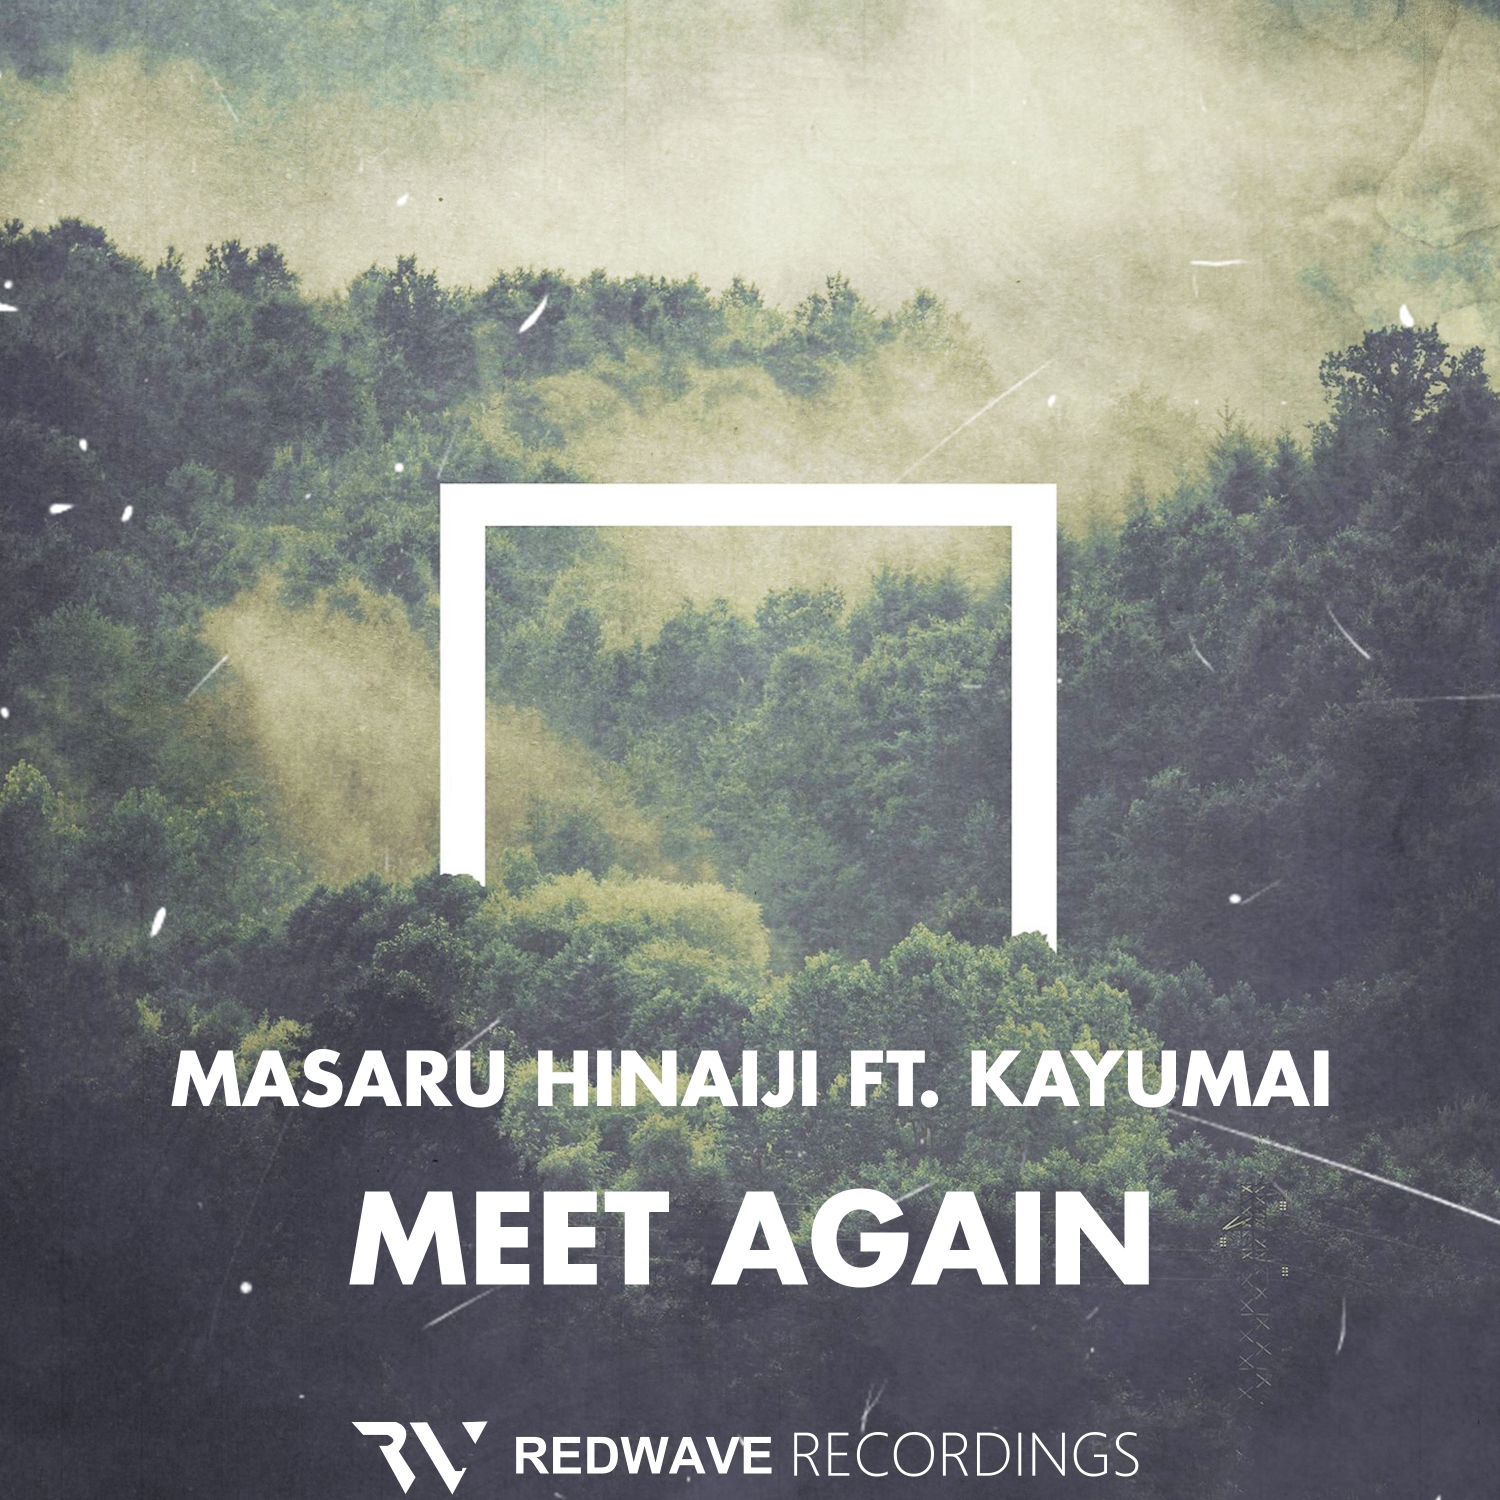 Masaru Hinaiji feat. Kayumai presents Meet Again on Sahara Recordings